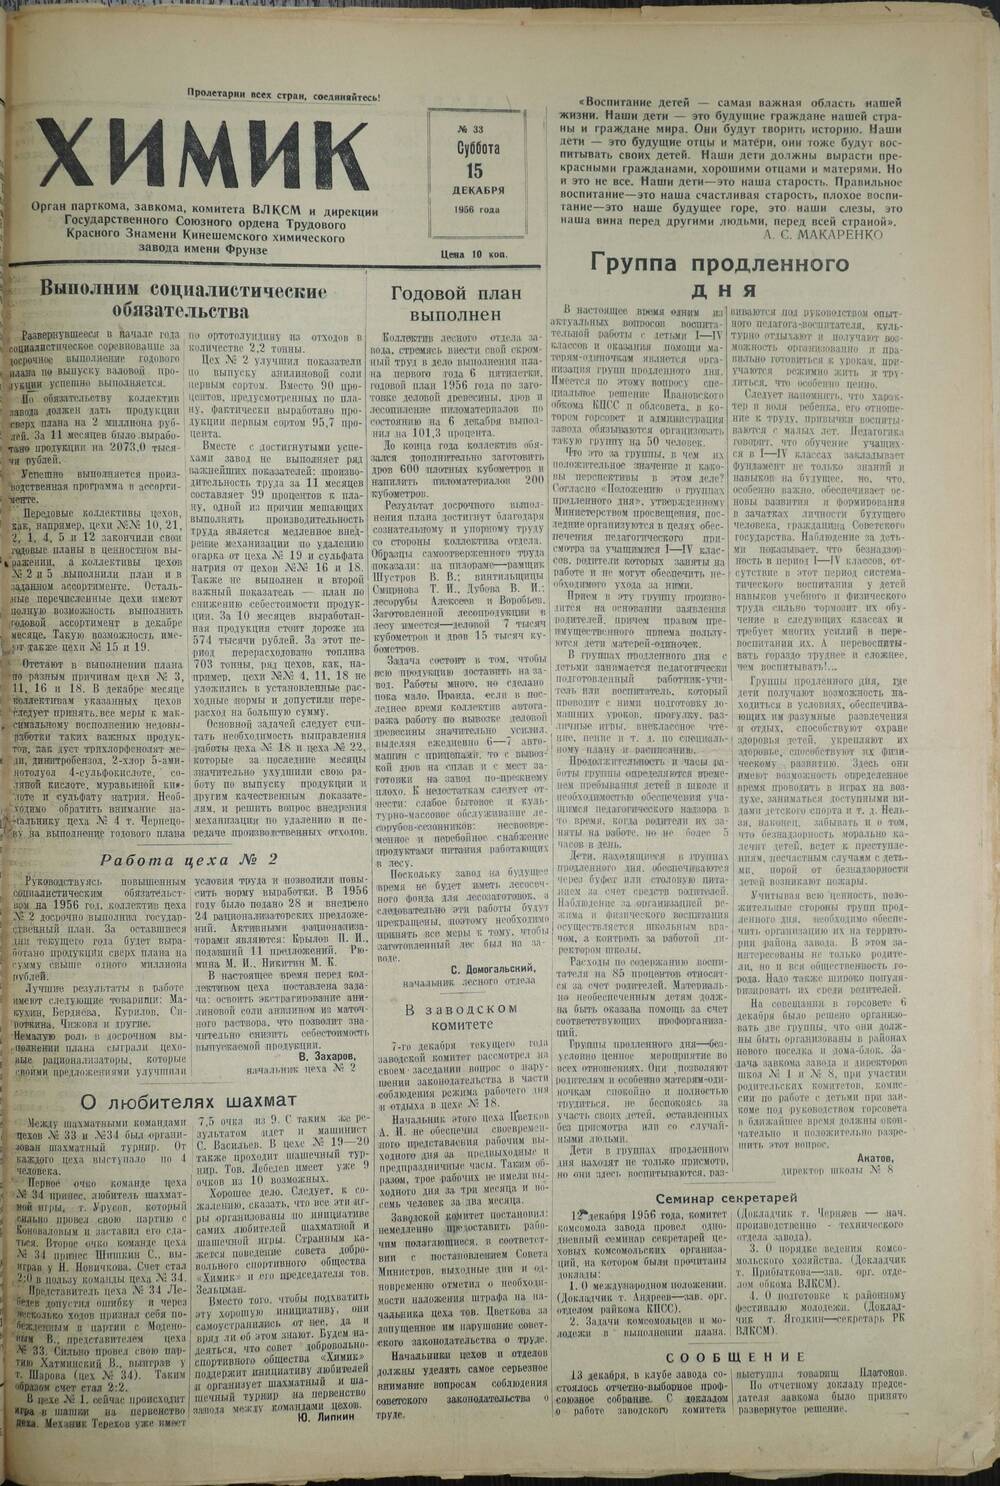 Газета «Химик» № 33 от 15 декабря 1956 года.